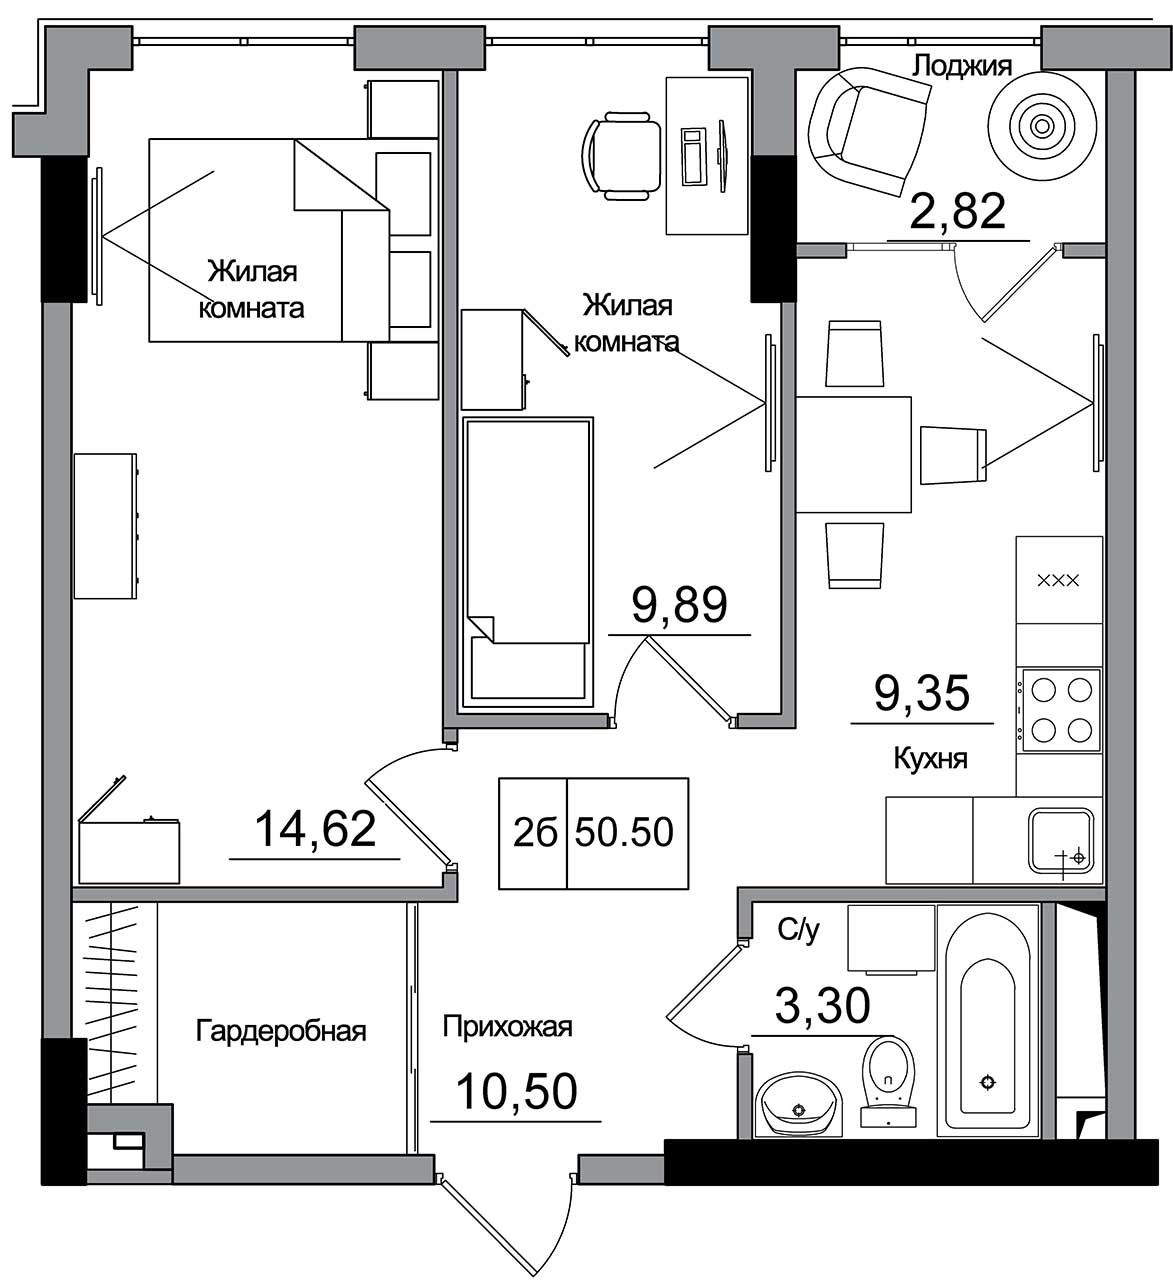 Планировка 2-к квартира площей 50.5м2, AB-16-03/00007.